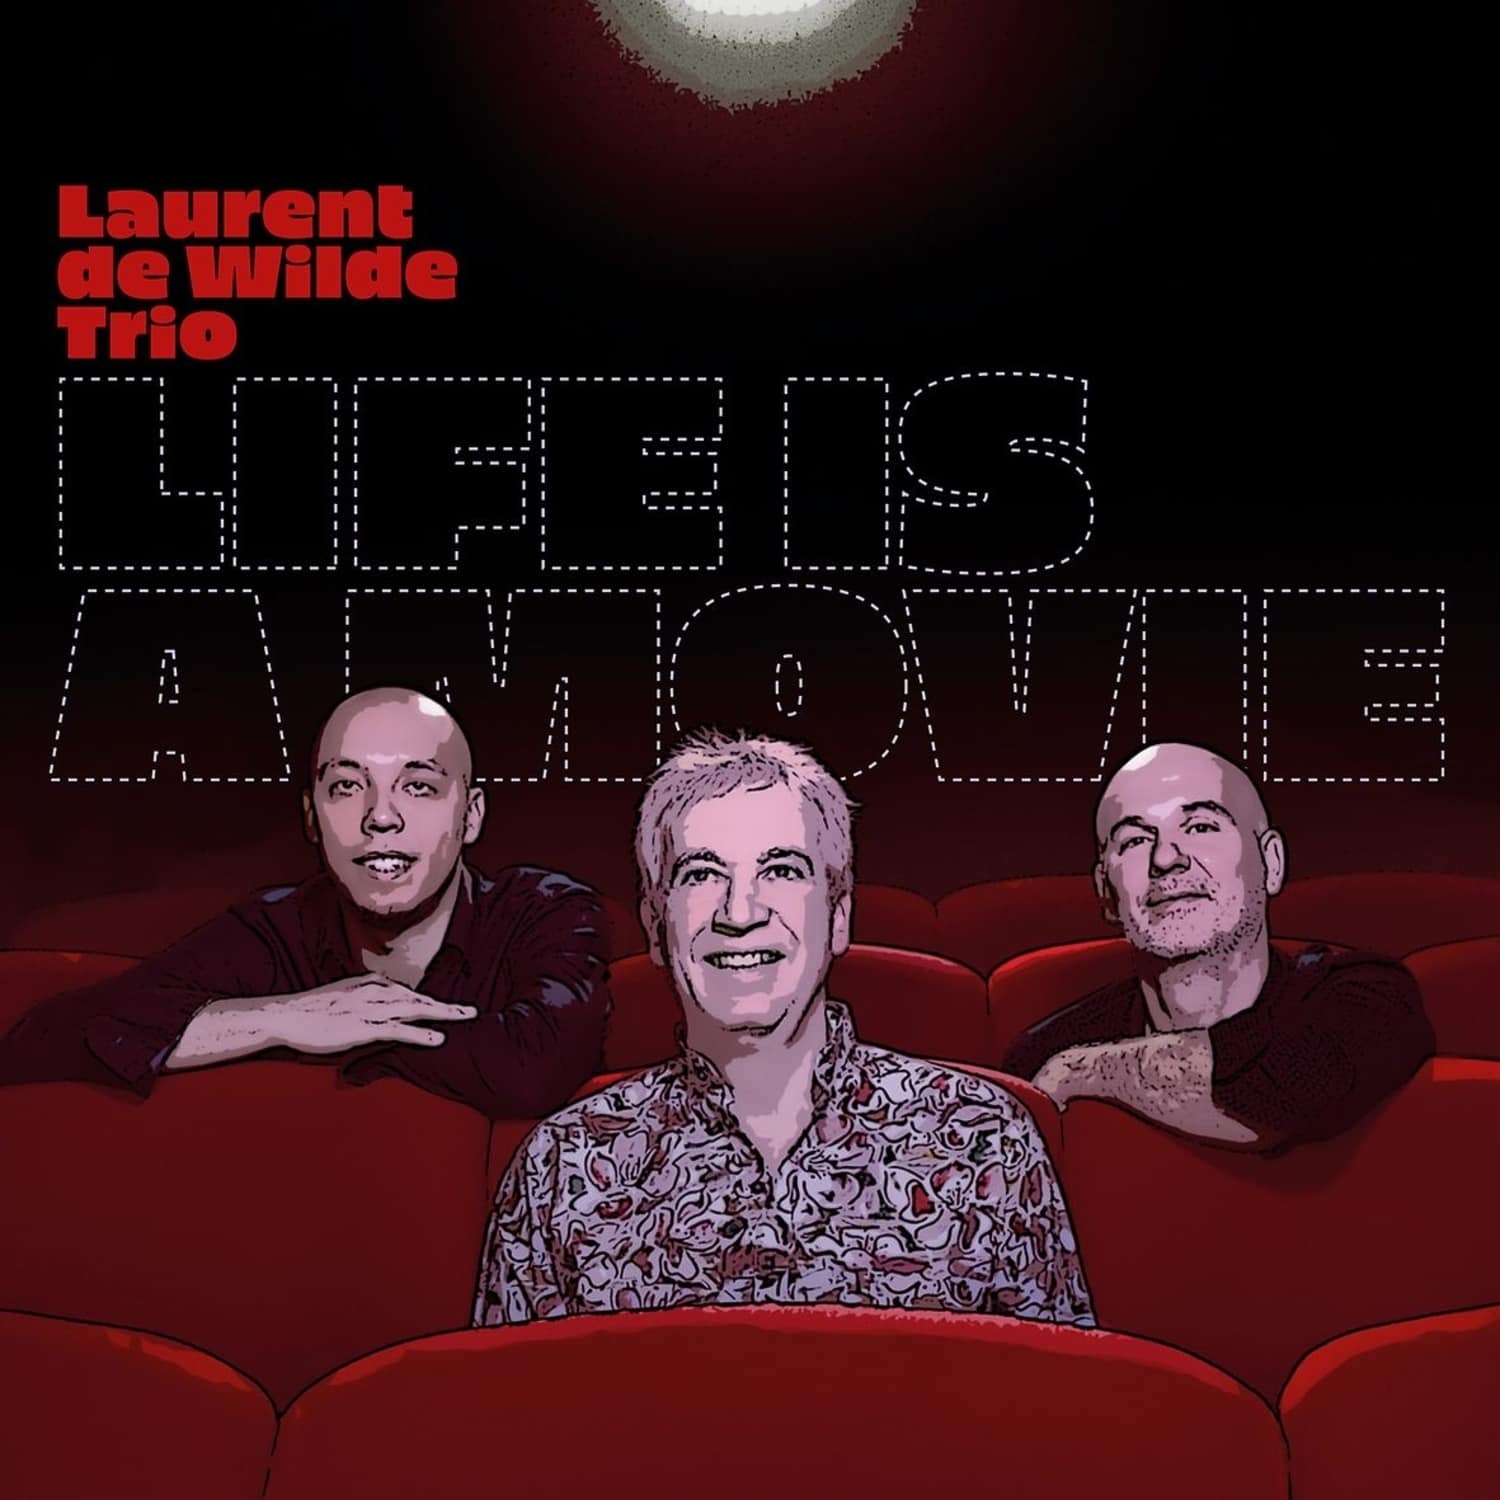  Laurent De Wilde - LIFE IS A MOVIE 